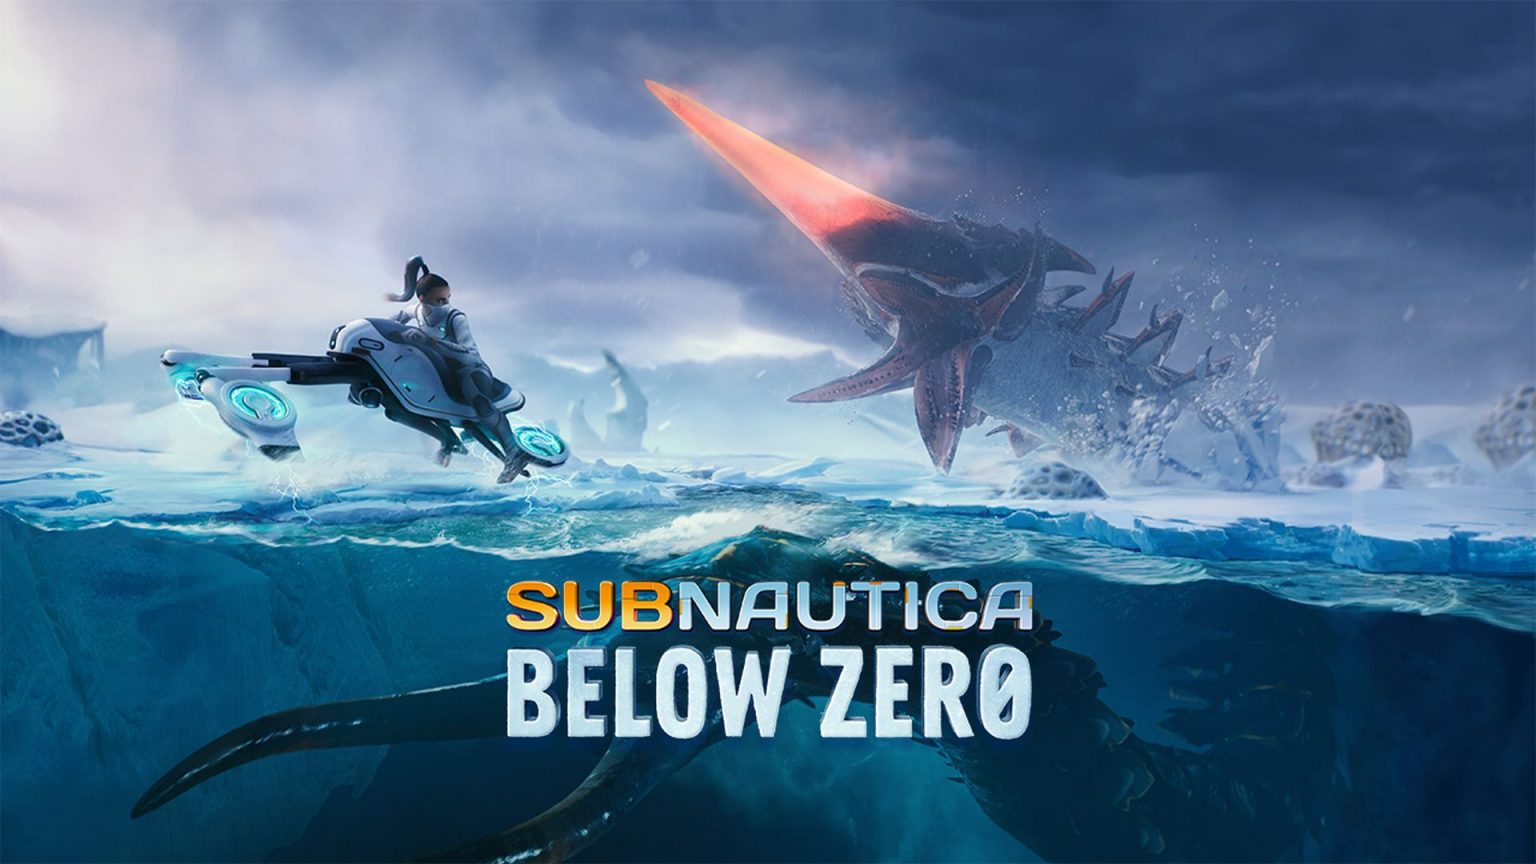 subnautica below zero release date ps4 2020